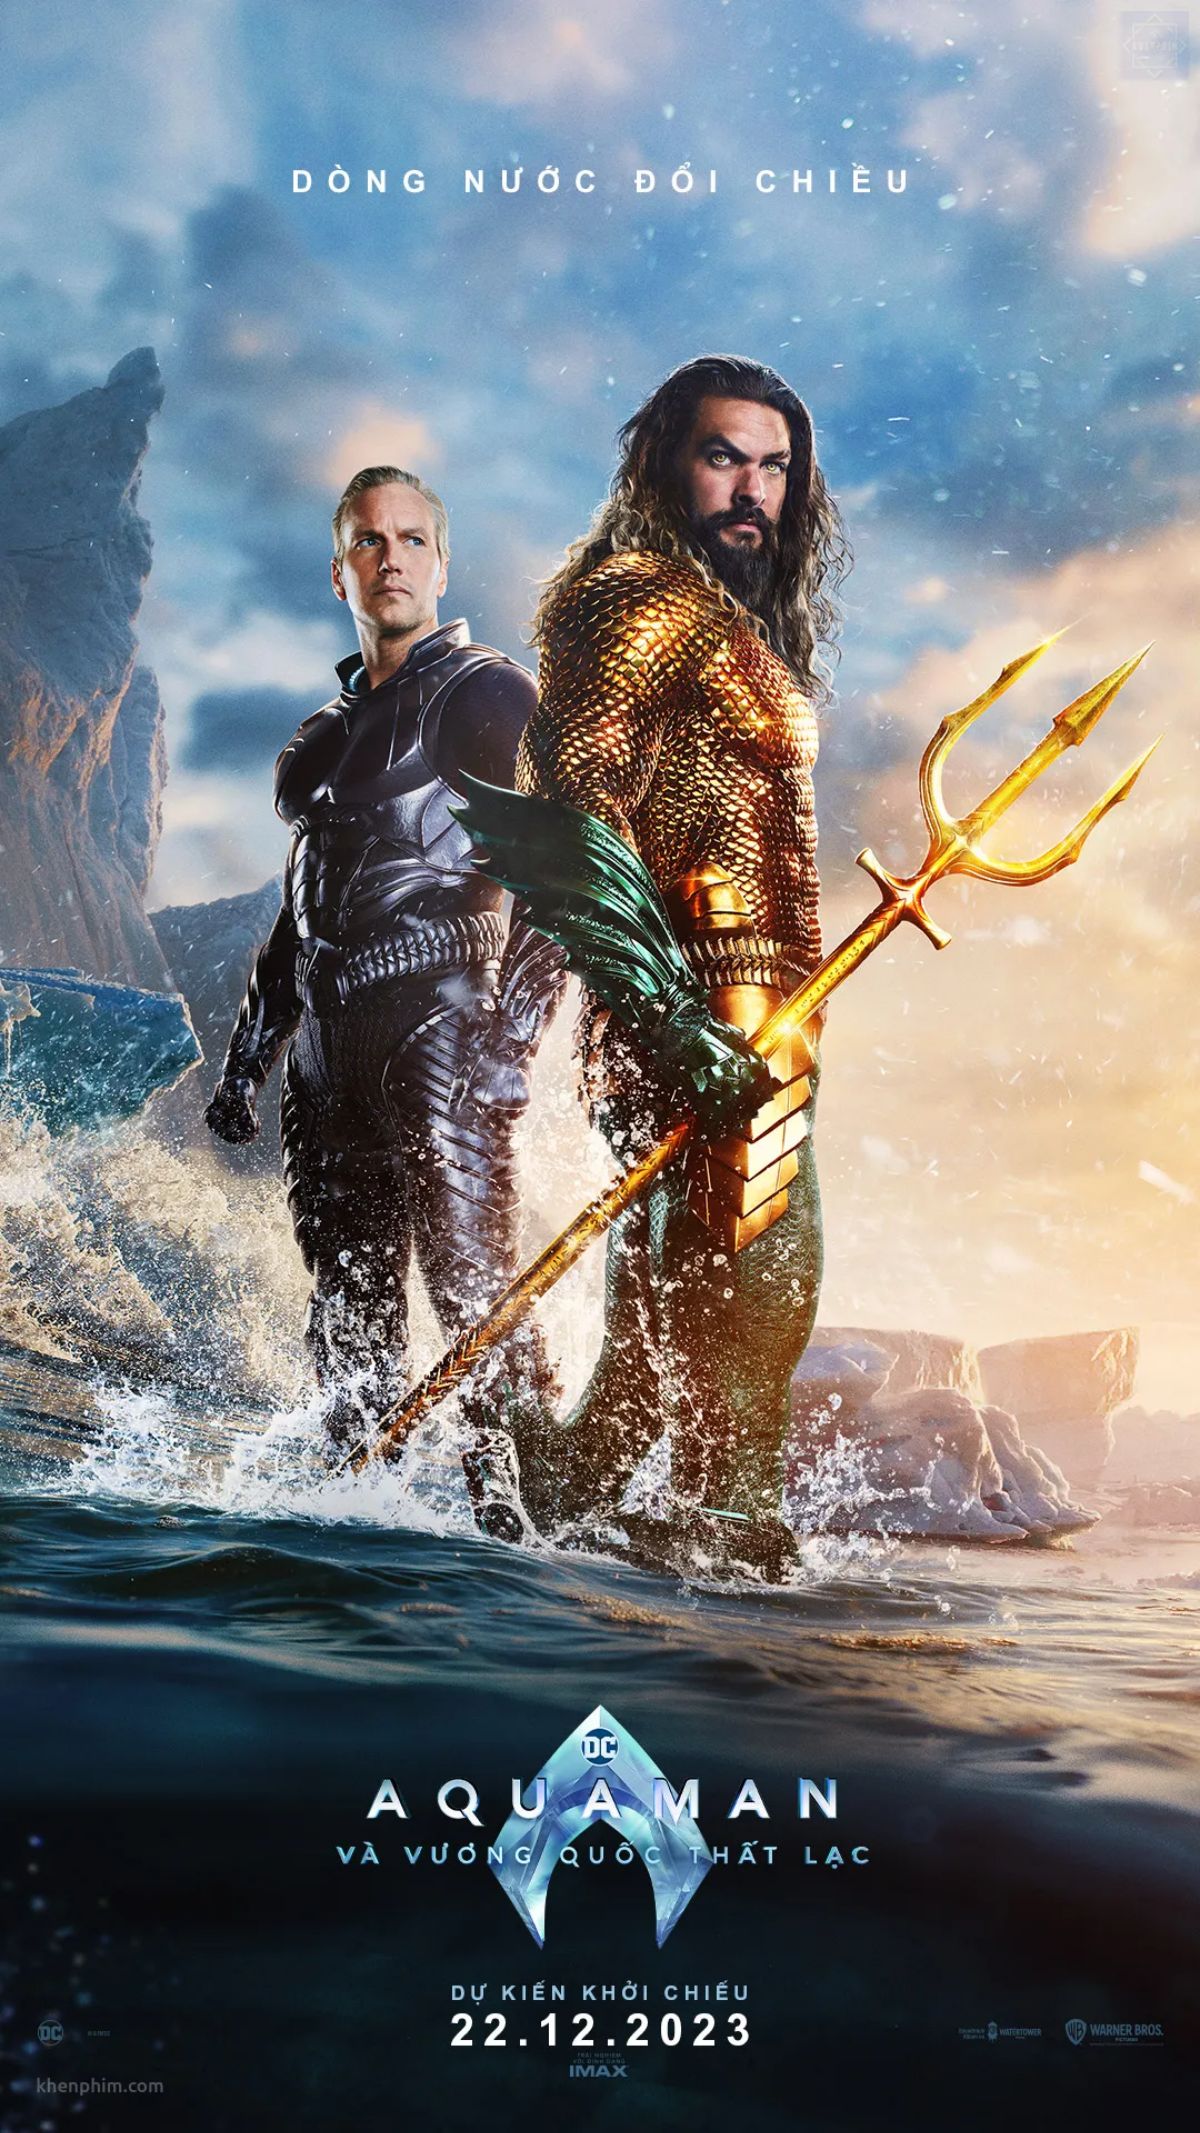 Nội dung Aquaman 2 nối tiếp câu chuyện của phần trước, tiếp tục theo chân của Arthur Curry (Jason Momoa) - người đã trở thành vua của vùng biển Atlantis